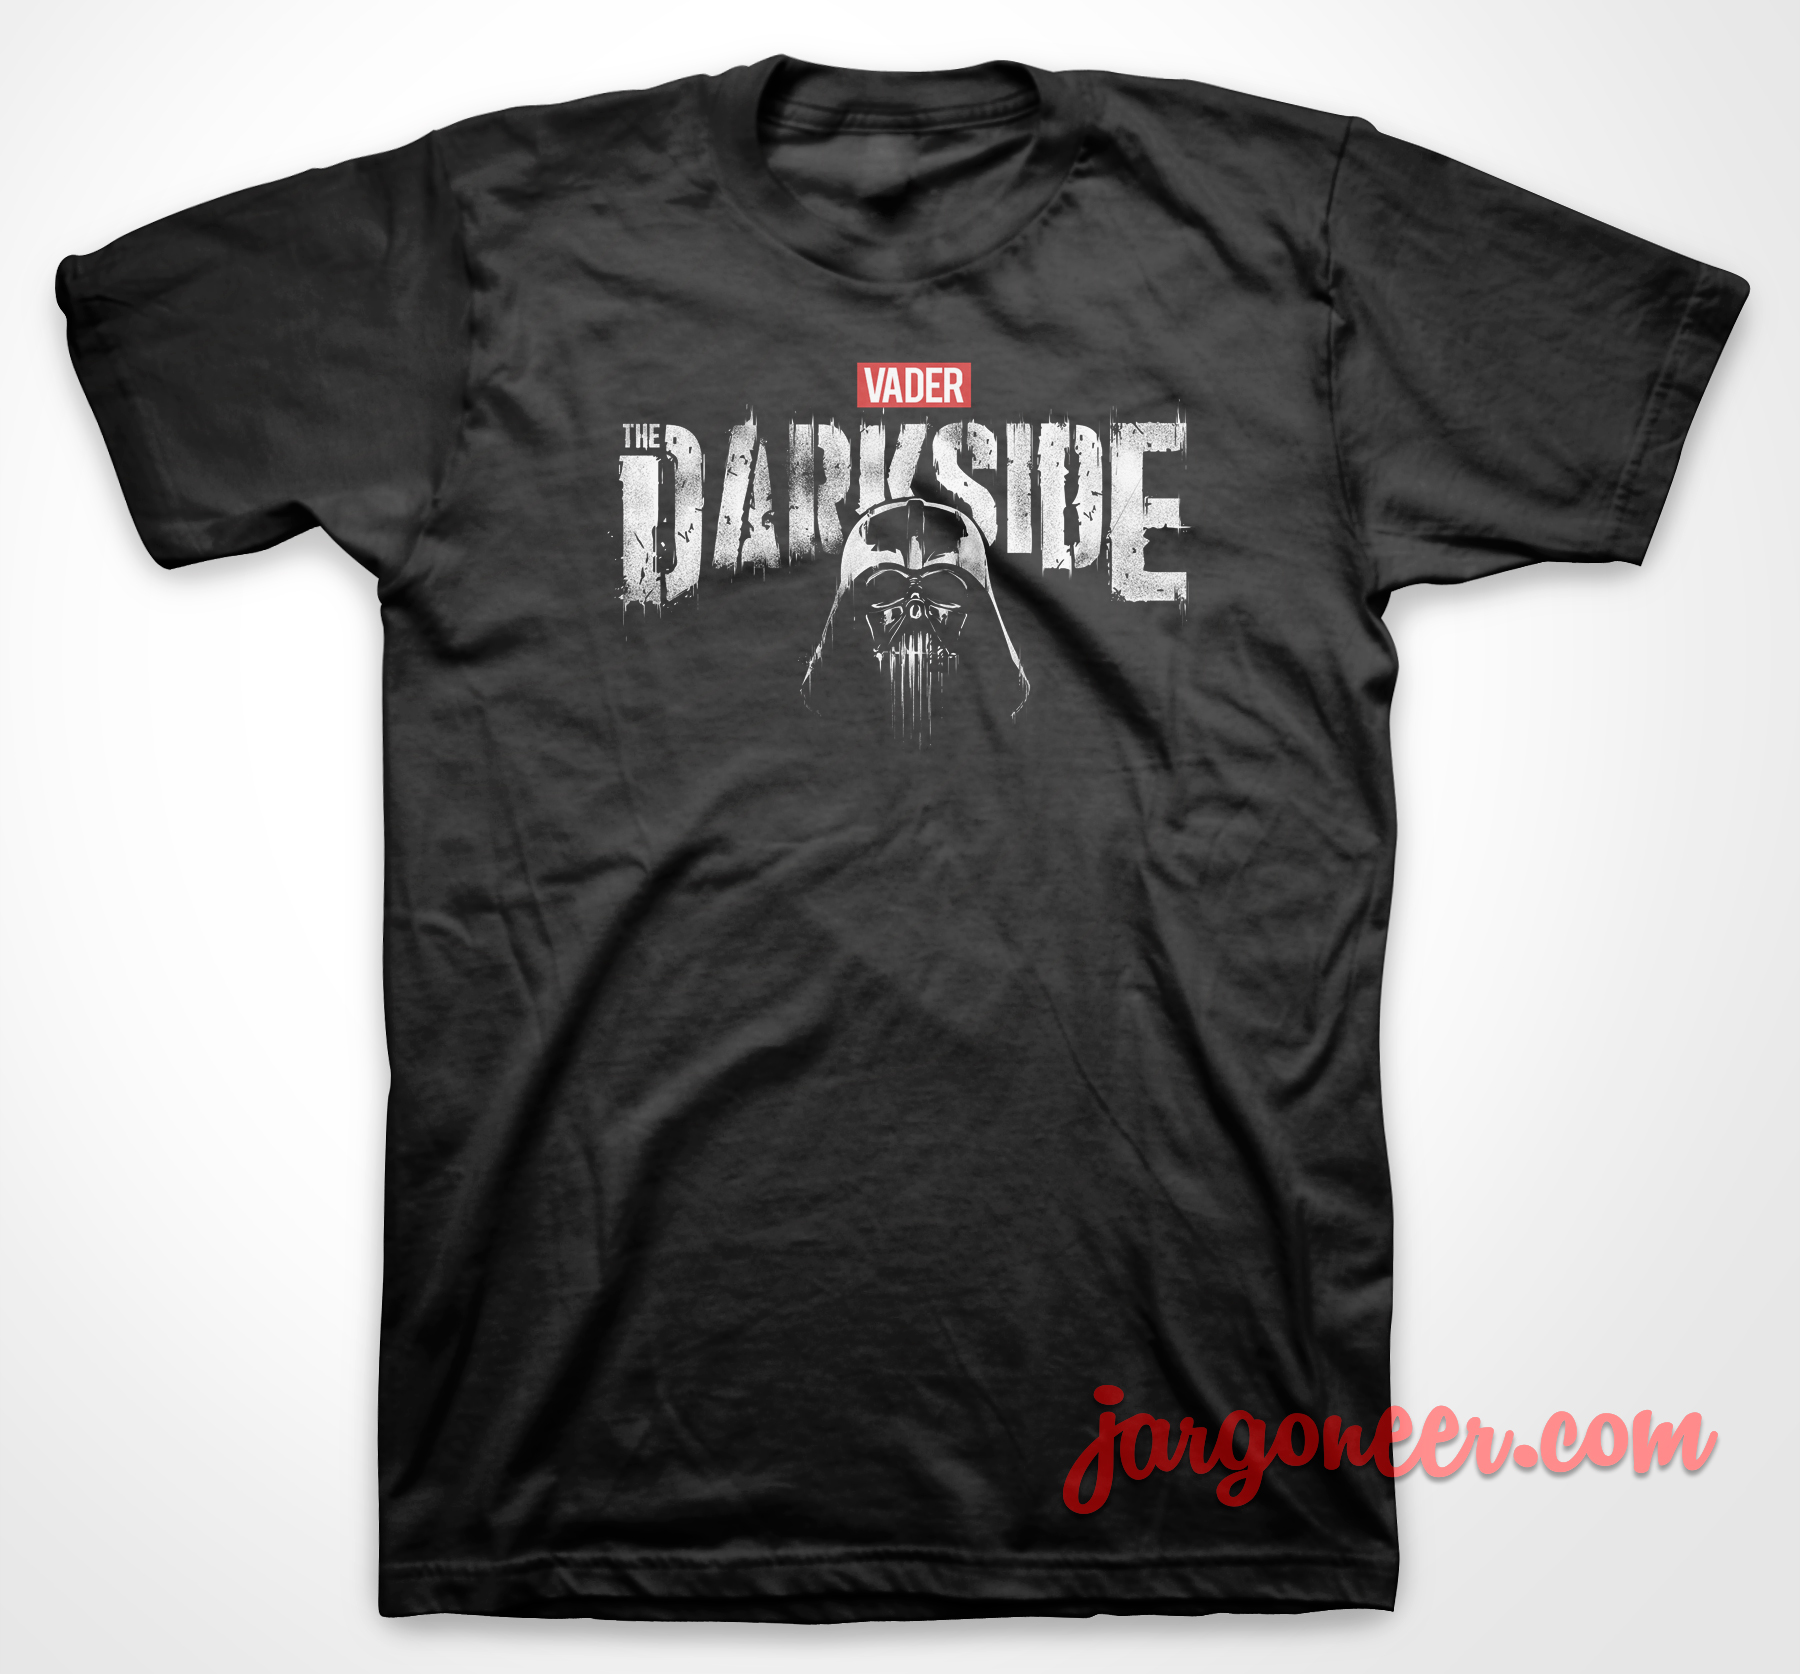 The Darkside - Shop Unique Graphic Cool Shirt Designs